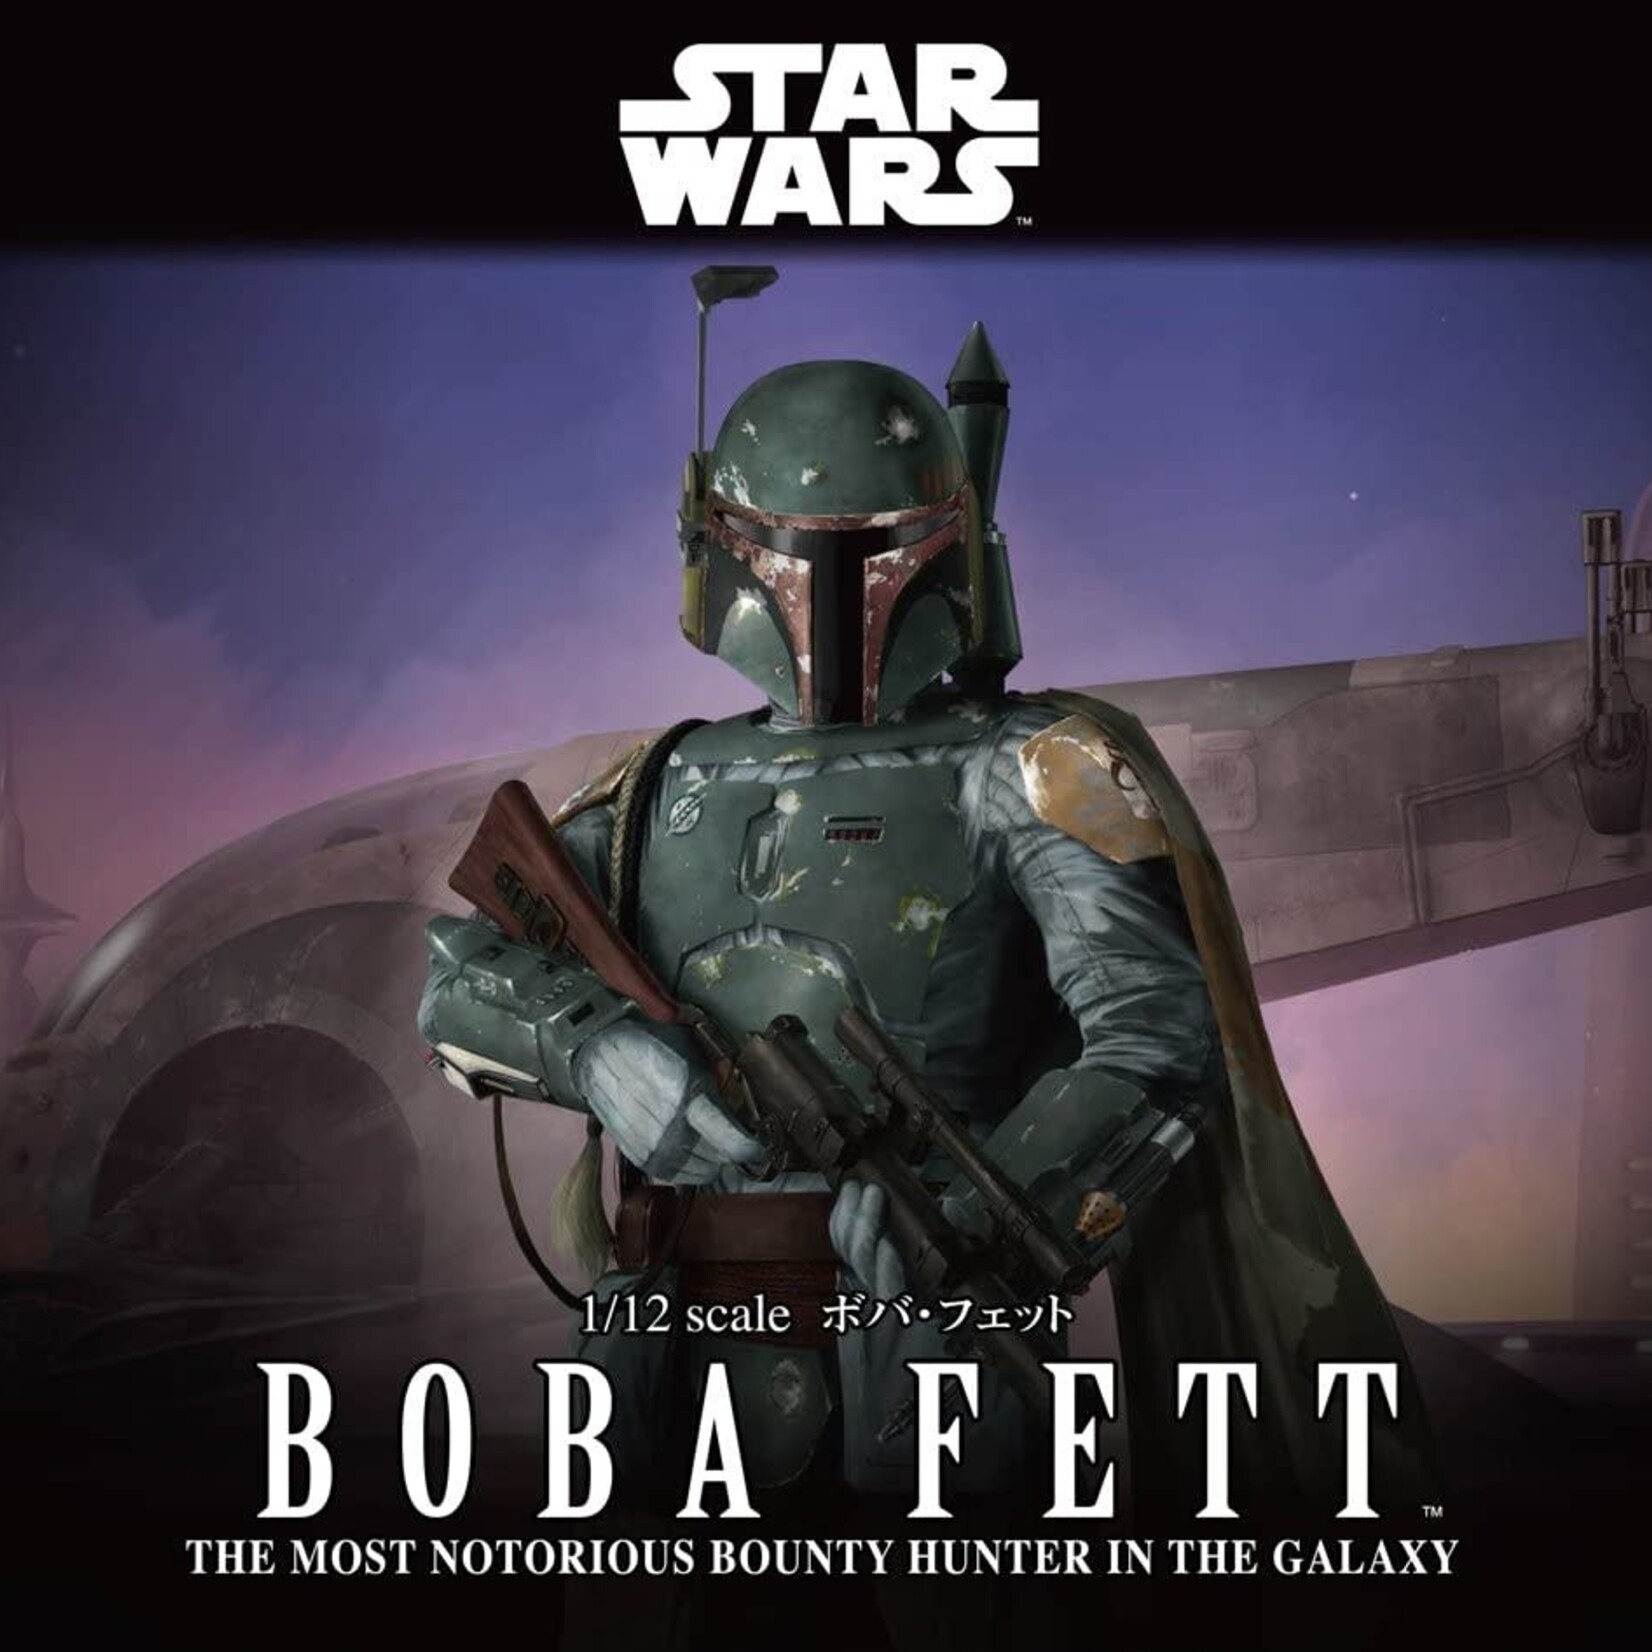 Bandai Bandai - Star Wars - Boba Fett (The Mandalorian) 1/12